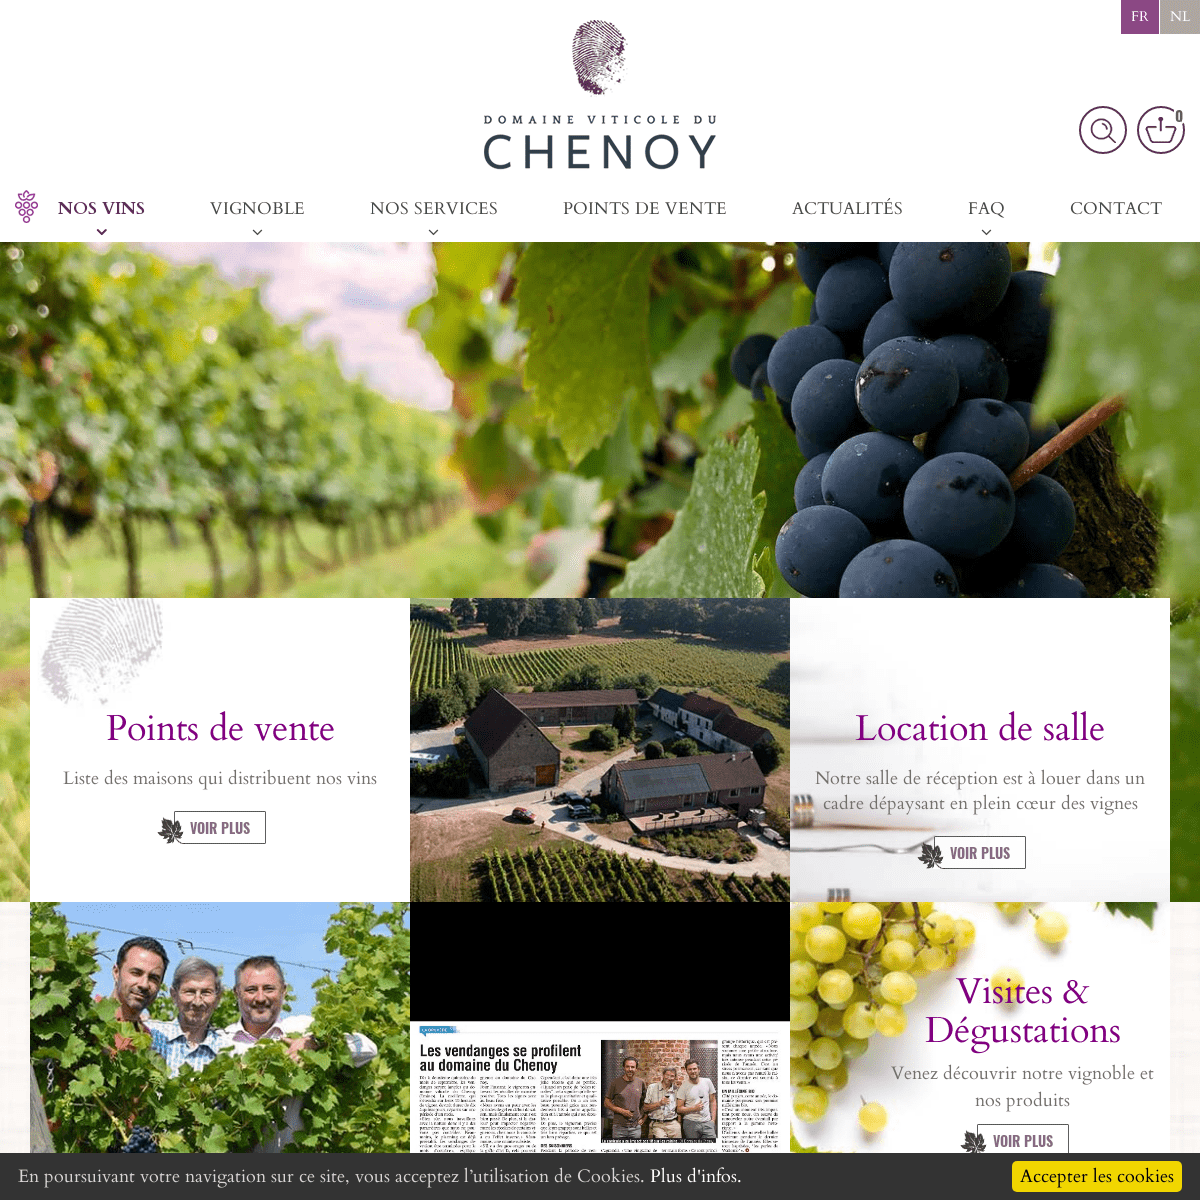 Domaine viticole belge, dÃ©couvrez nos vins - Le Domaine du Chenoy